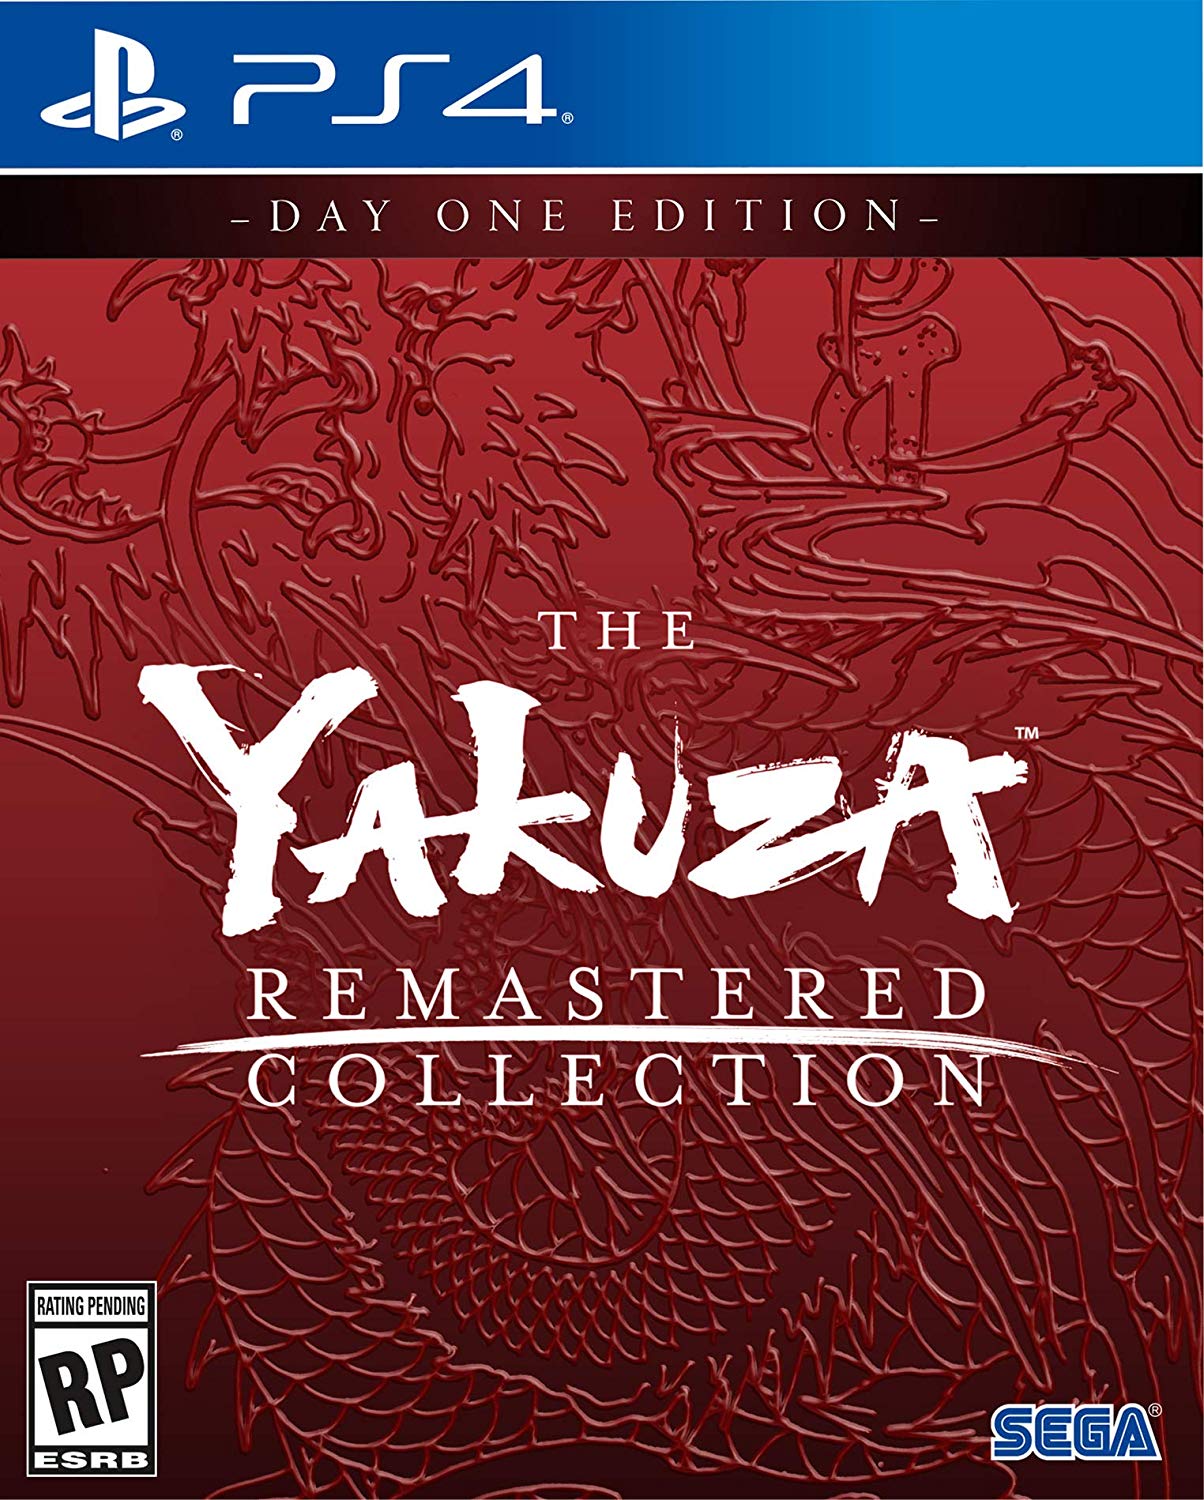 The Yakuza Remastered Collection (Yakuza 3 + 4 + 5) 